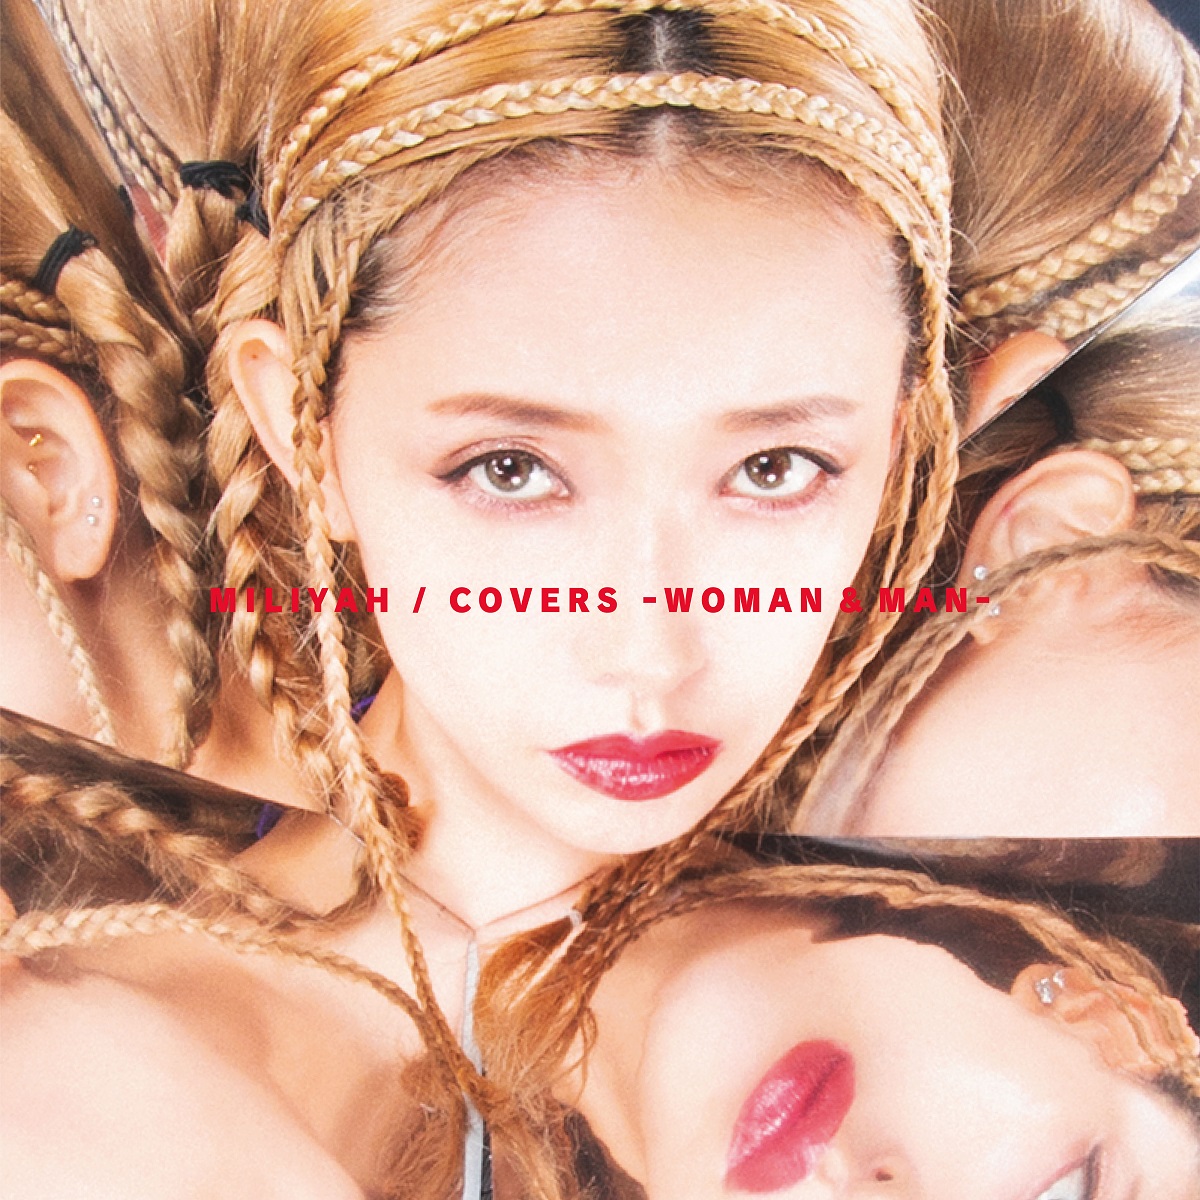 加藤ミリヤ デビュー15周年イヤー企画第3弾 初のカバーアルバム Covers Woman Man の収録曲とアートワークが遂に発表 株式会社ソニー ミュージックレーベルズのプレスリリース